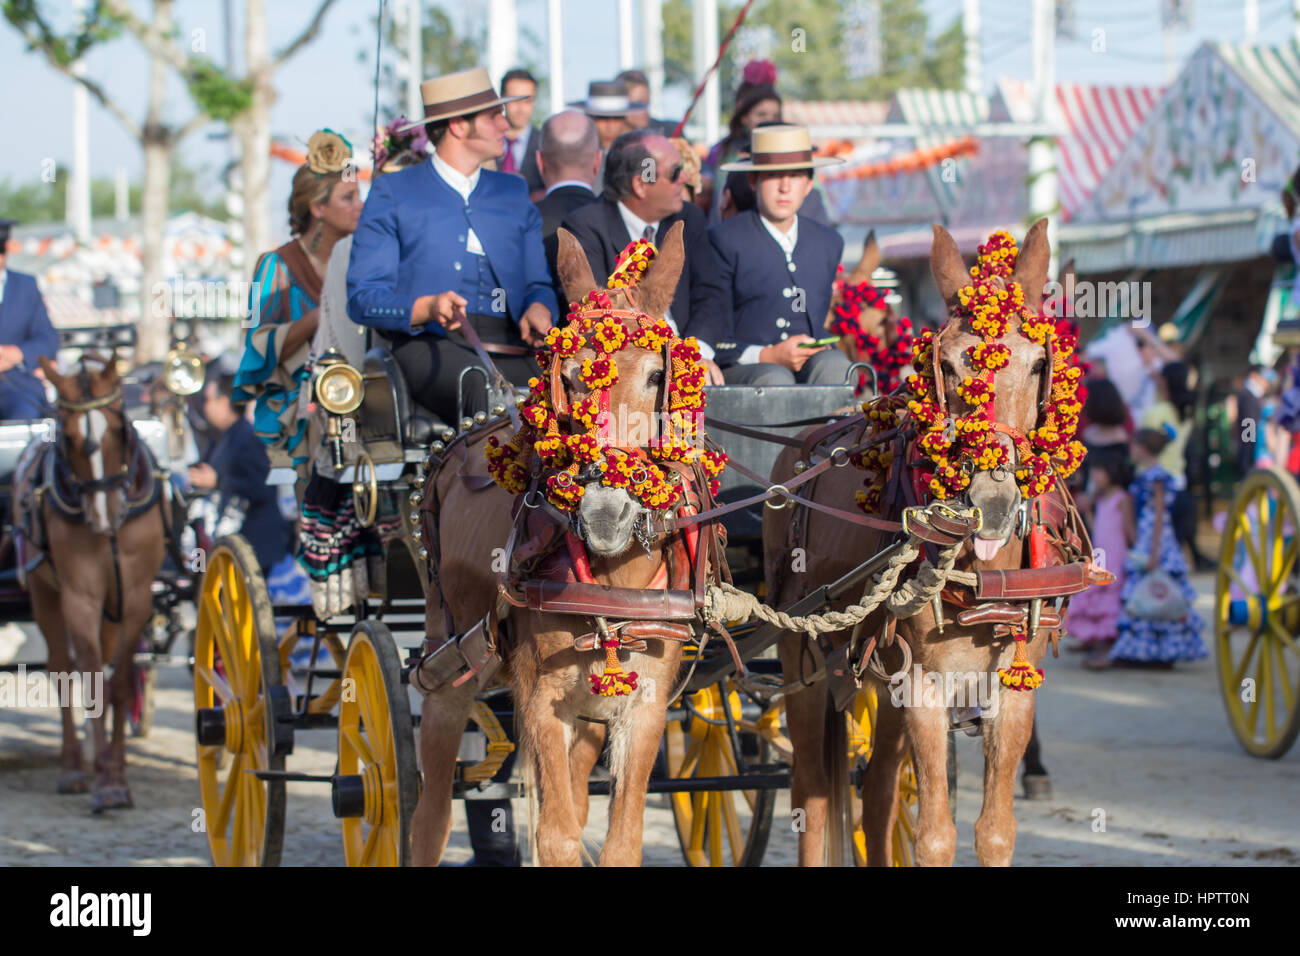 Siviglia, Spagna - Apr, 25: persone in costumi tradizionali di equitazione carrelli su feria de abril su Aprile 25, 2014 a Siviglia, Spagna Foto Stock